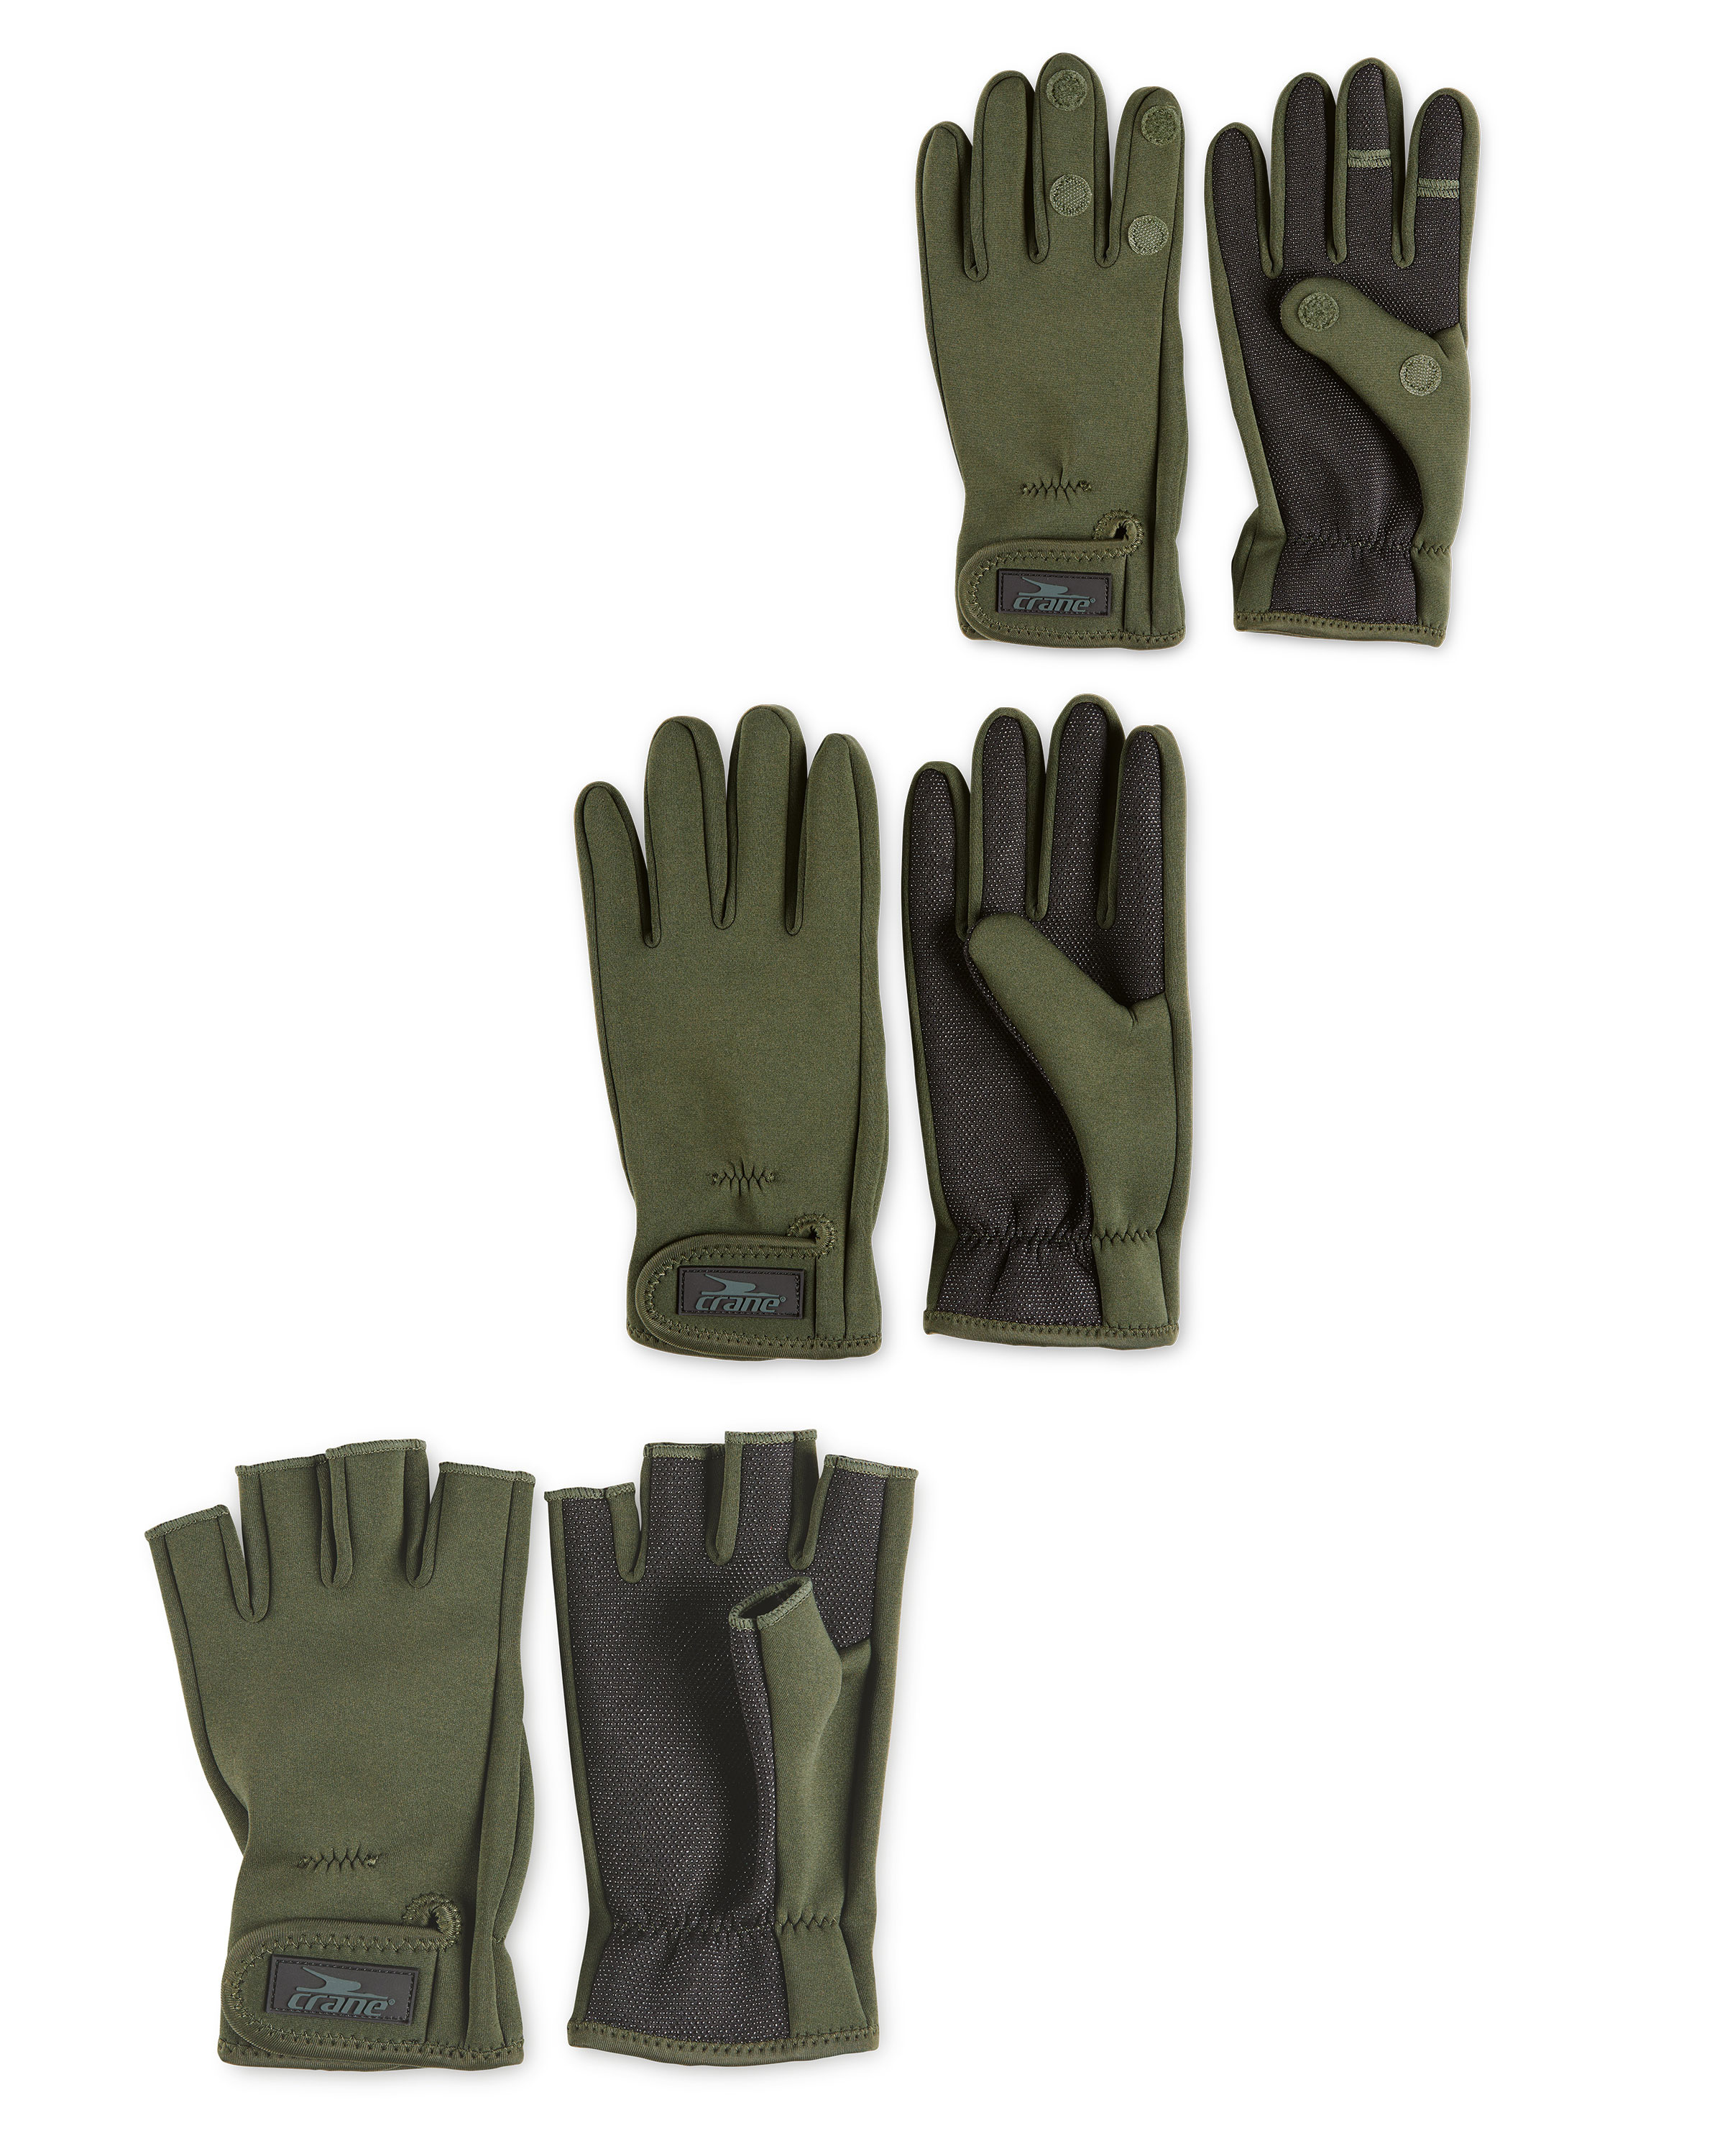 Men's Neoprene Gloves Fishing Hunting Outdoor Winter Sports Gloves -  UK